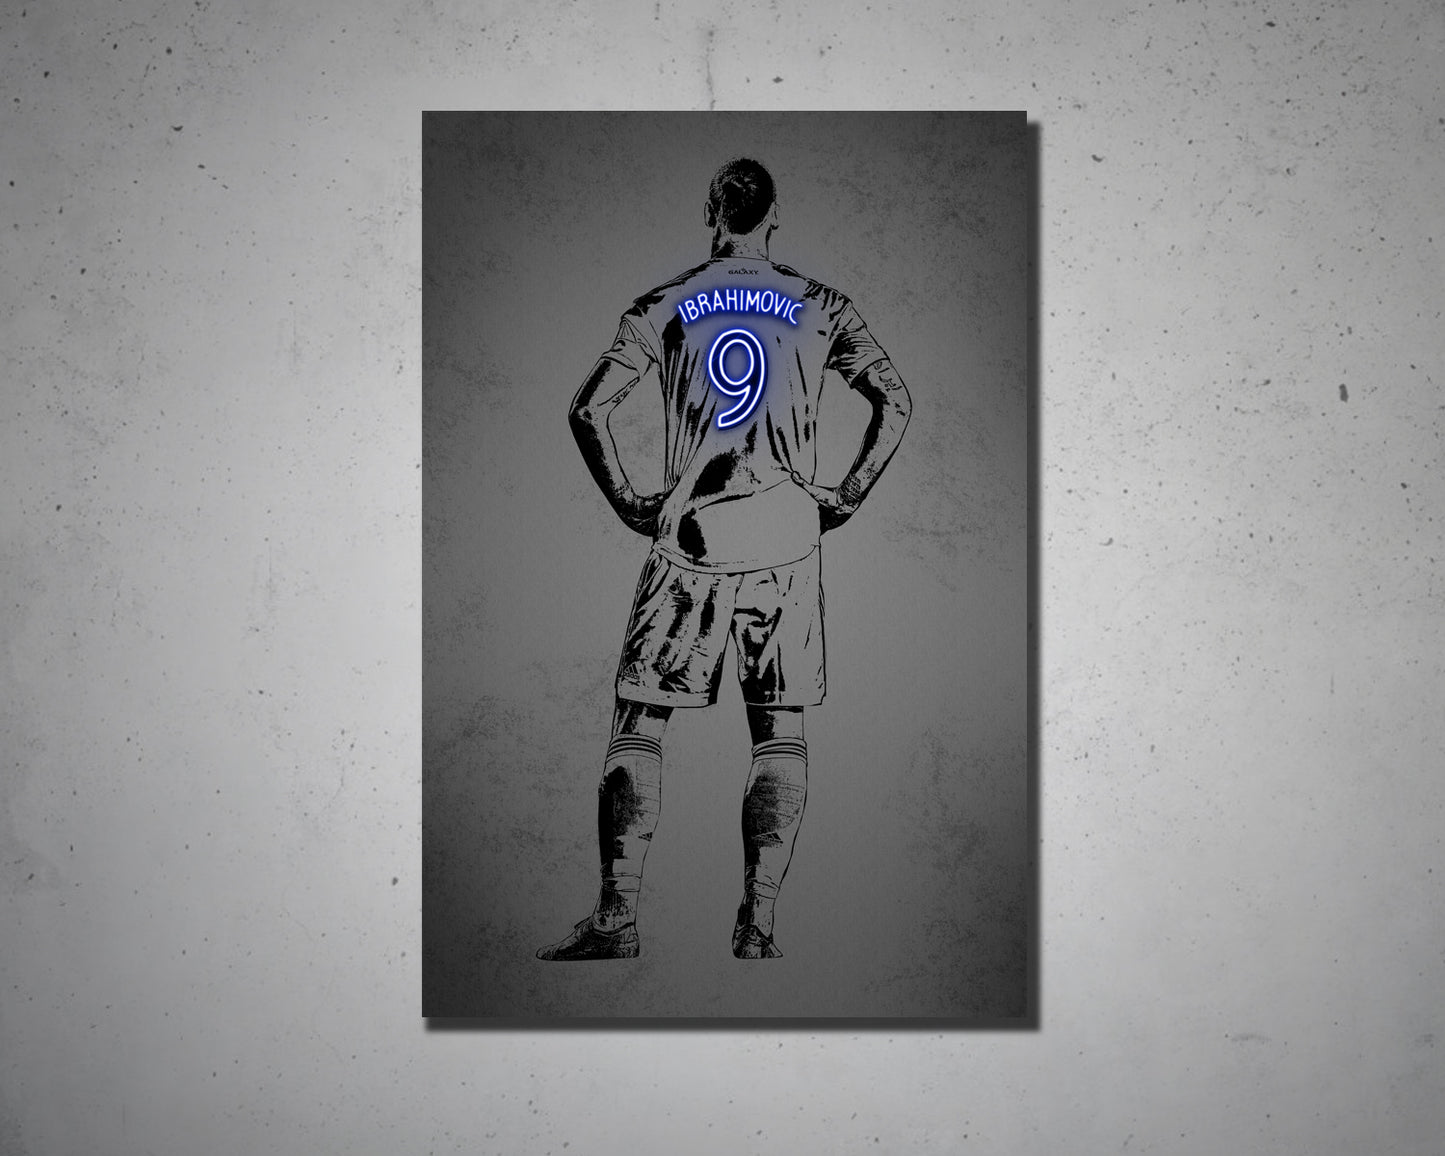 Zlatan Ibrahimović Canvas Wall Art 